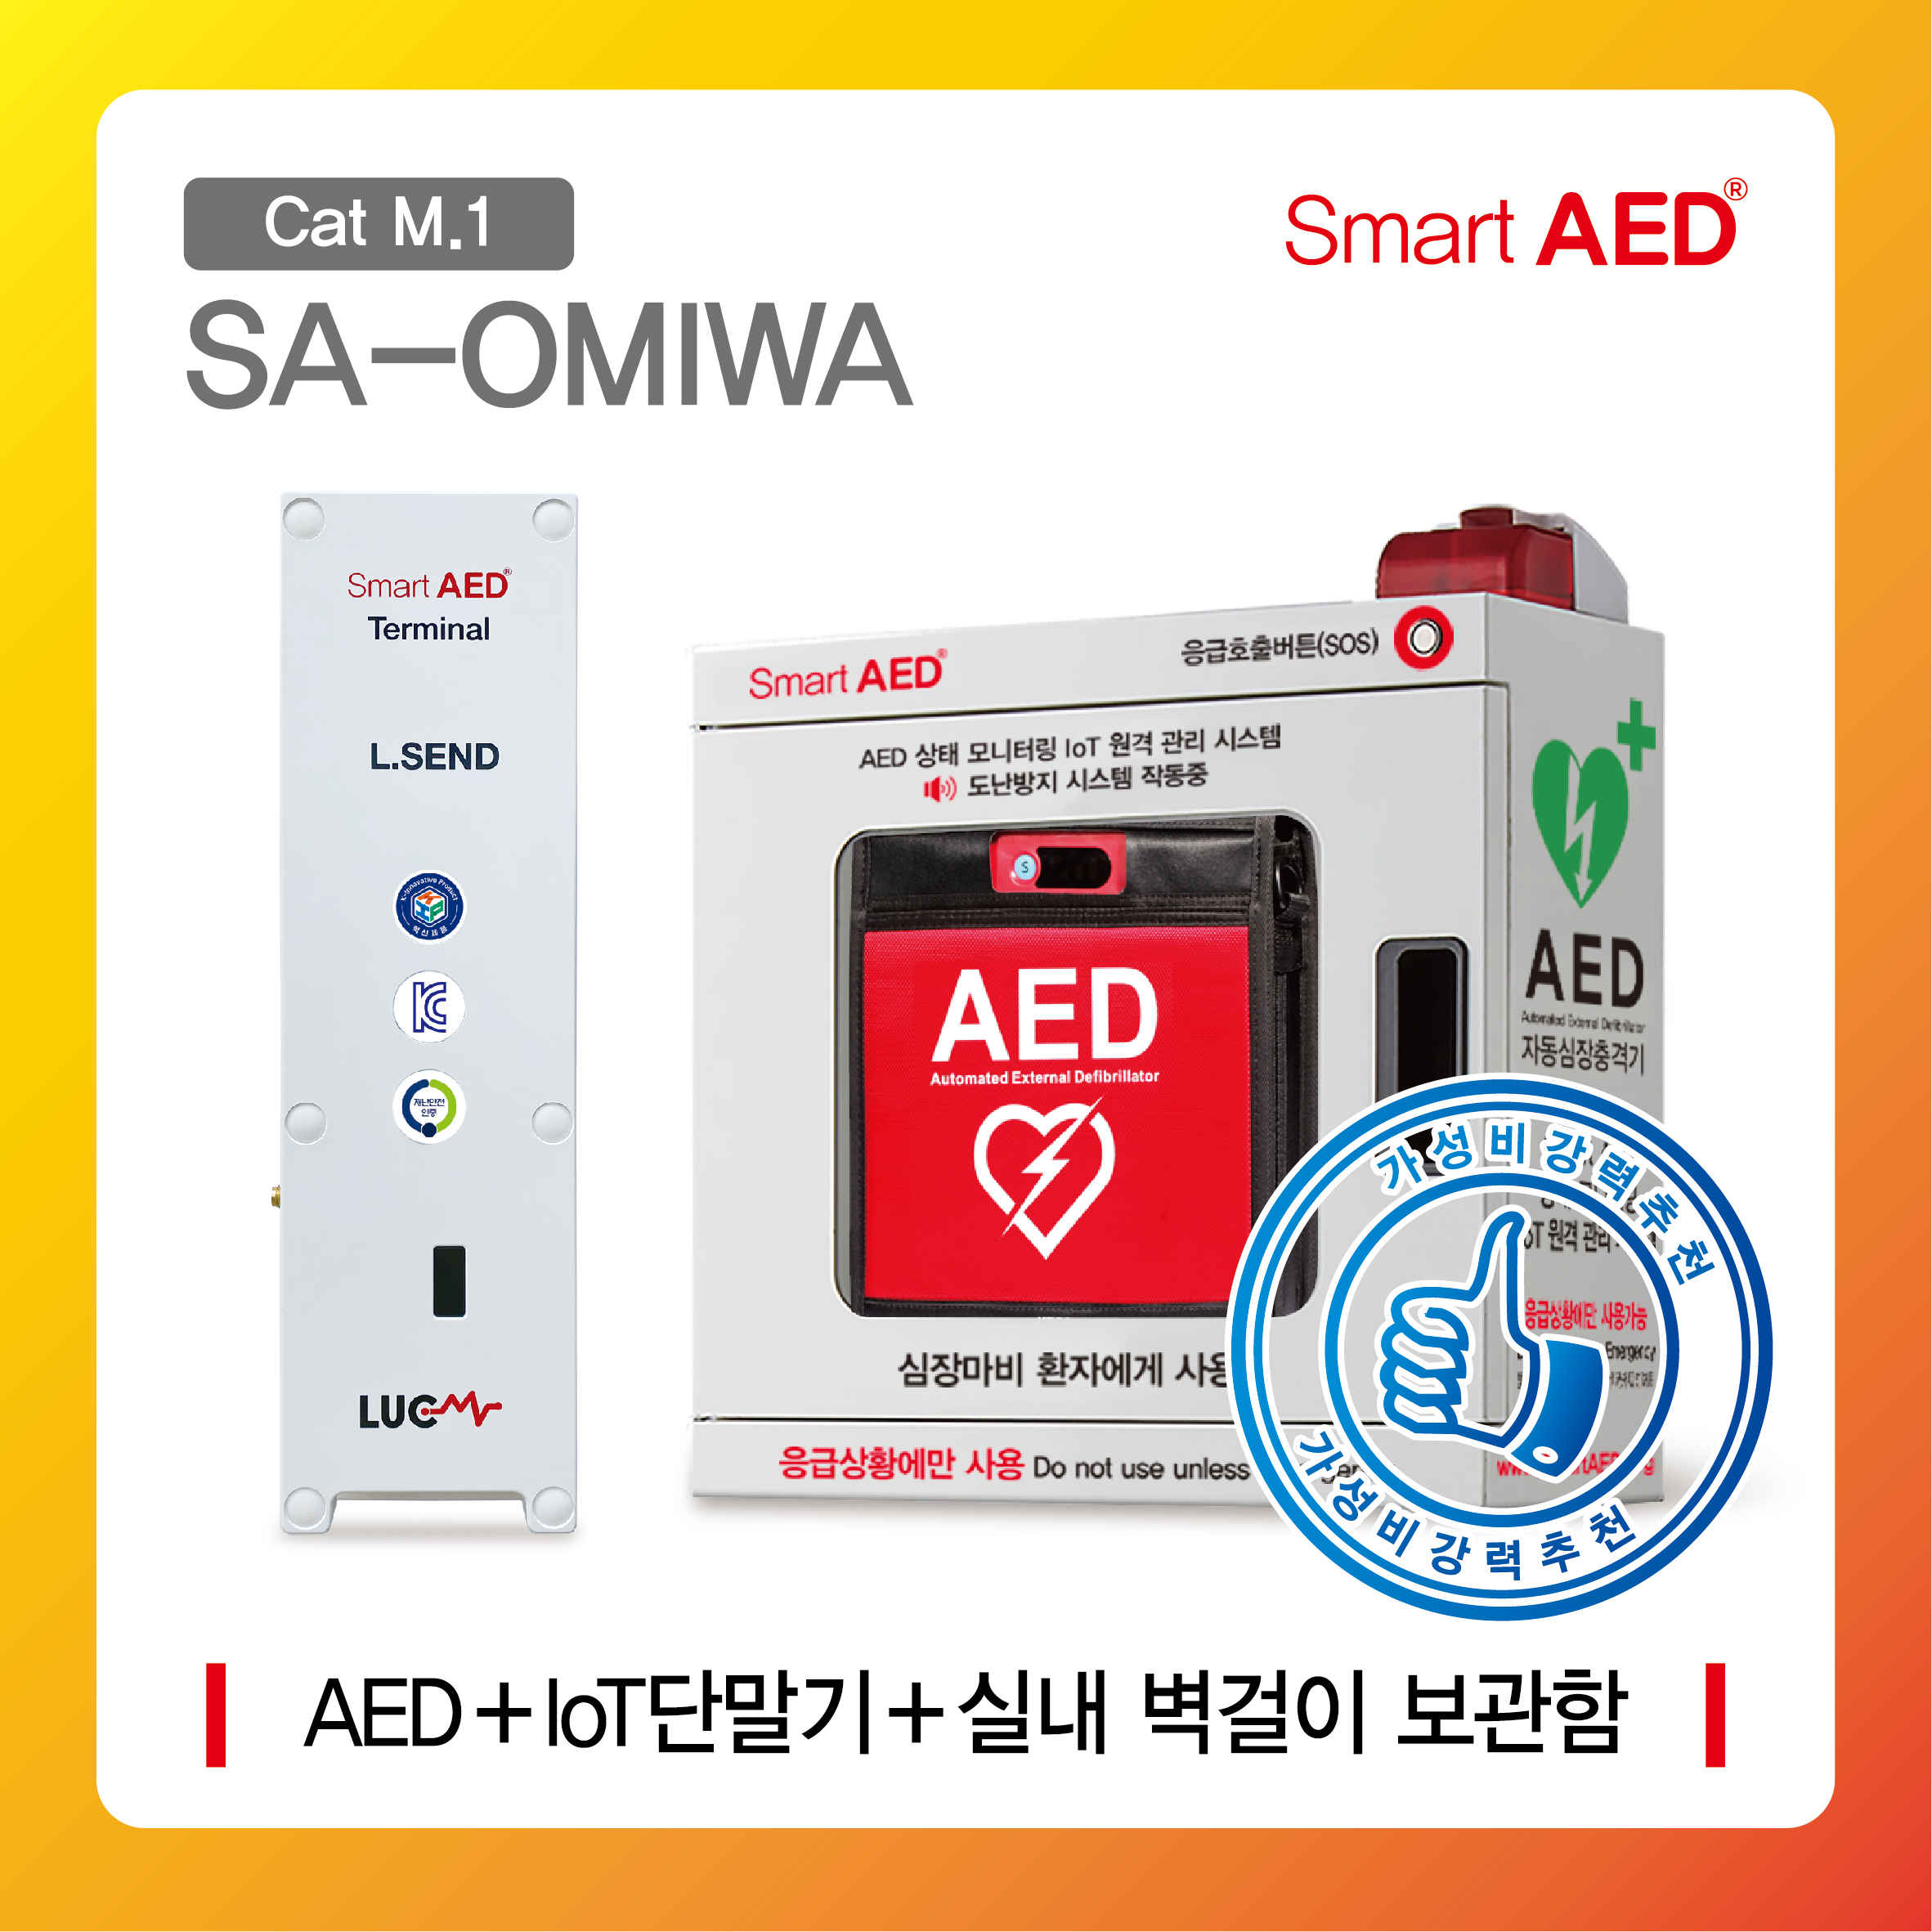 [ SA-OMIWA ] 스마트 AED 통합모니터링 장치 및  실내 벽걸이 보관함 (AED포함)